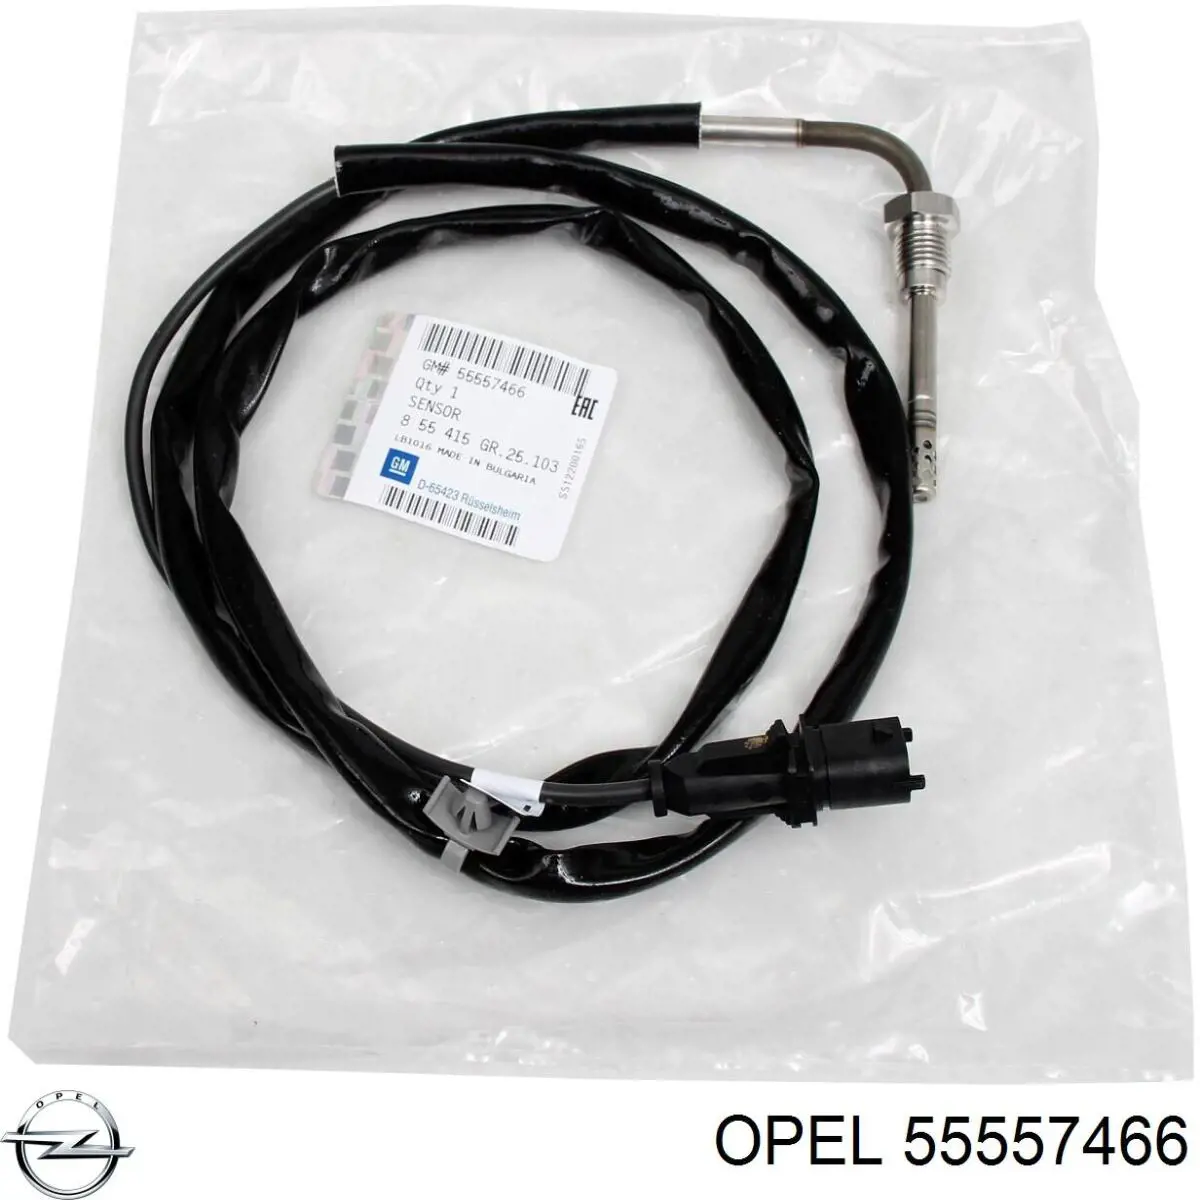 55557466 Opel sensor de temperatura, gas de escape, después de filtro hollín/partículas